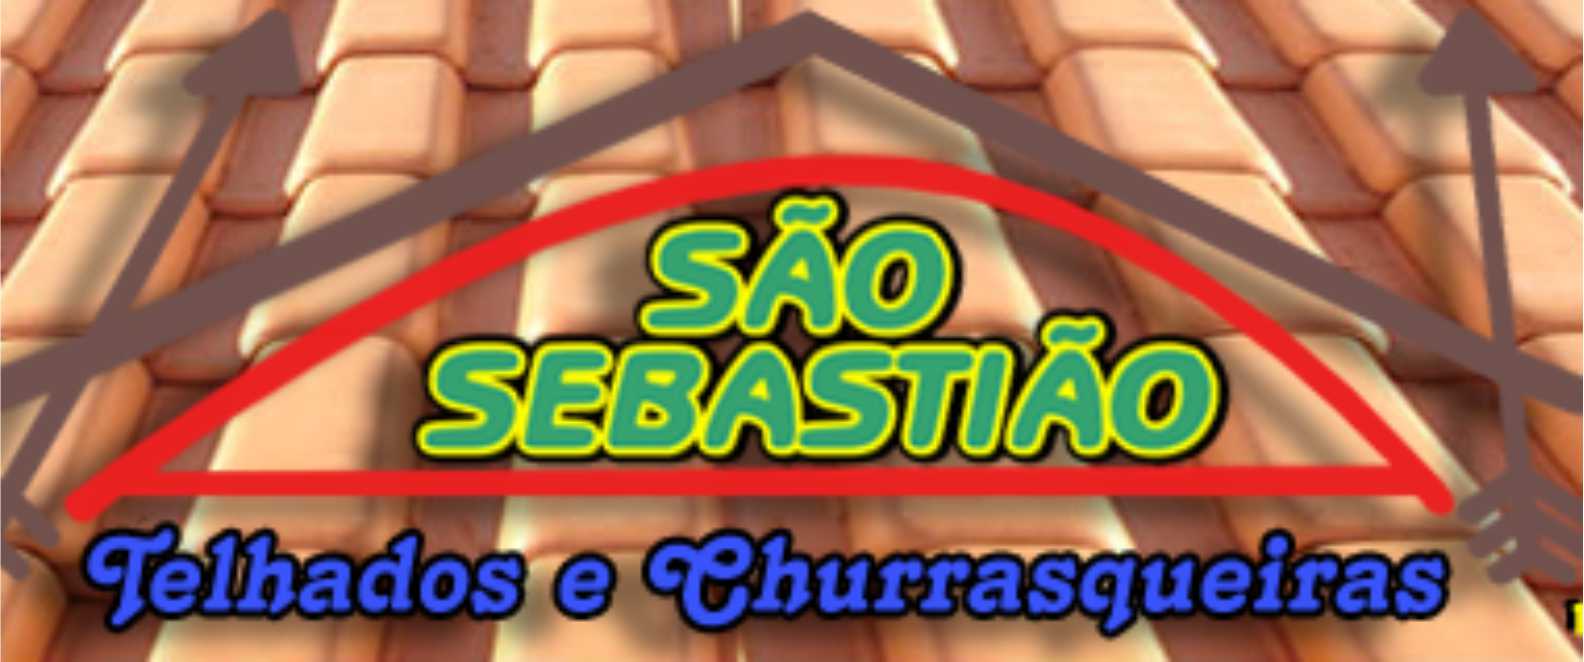 São Sebastião Telhados - Foto 1